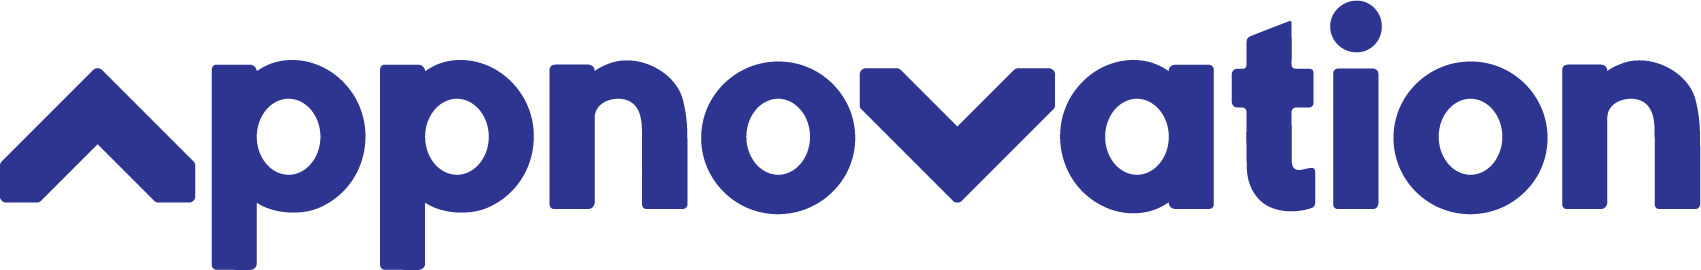 Logotipo de Appnovation